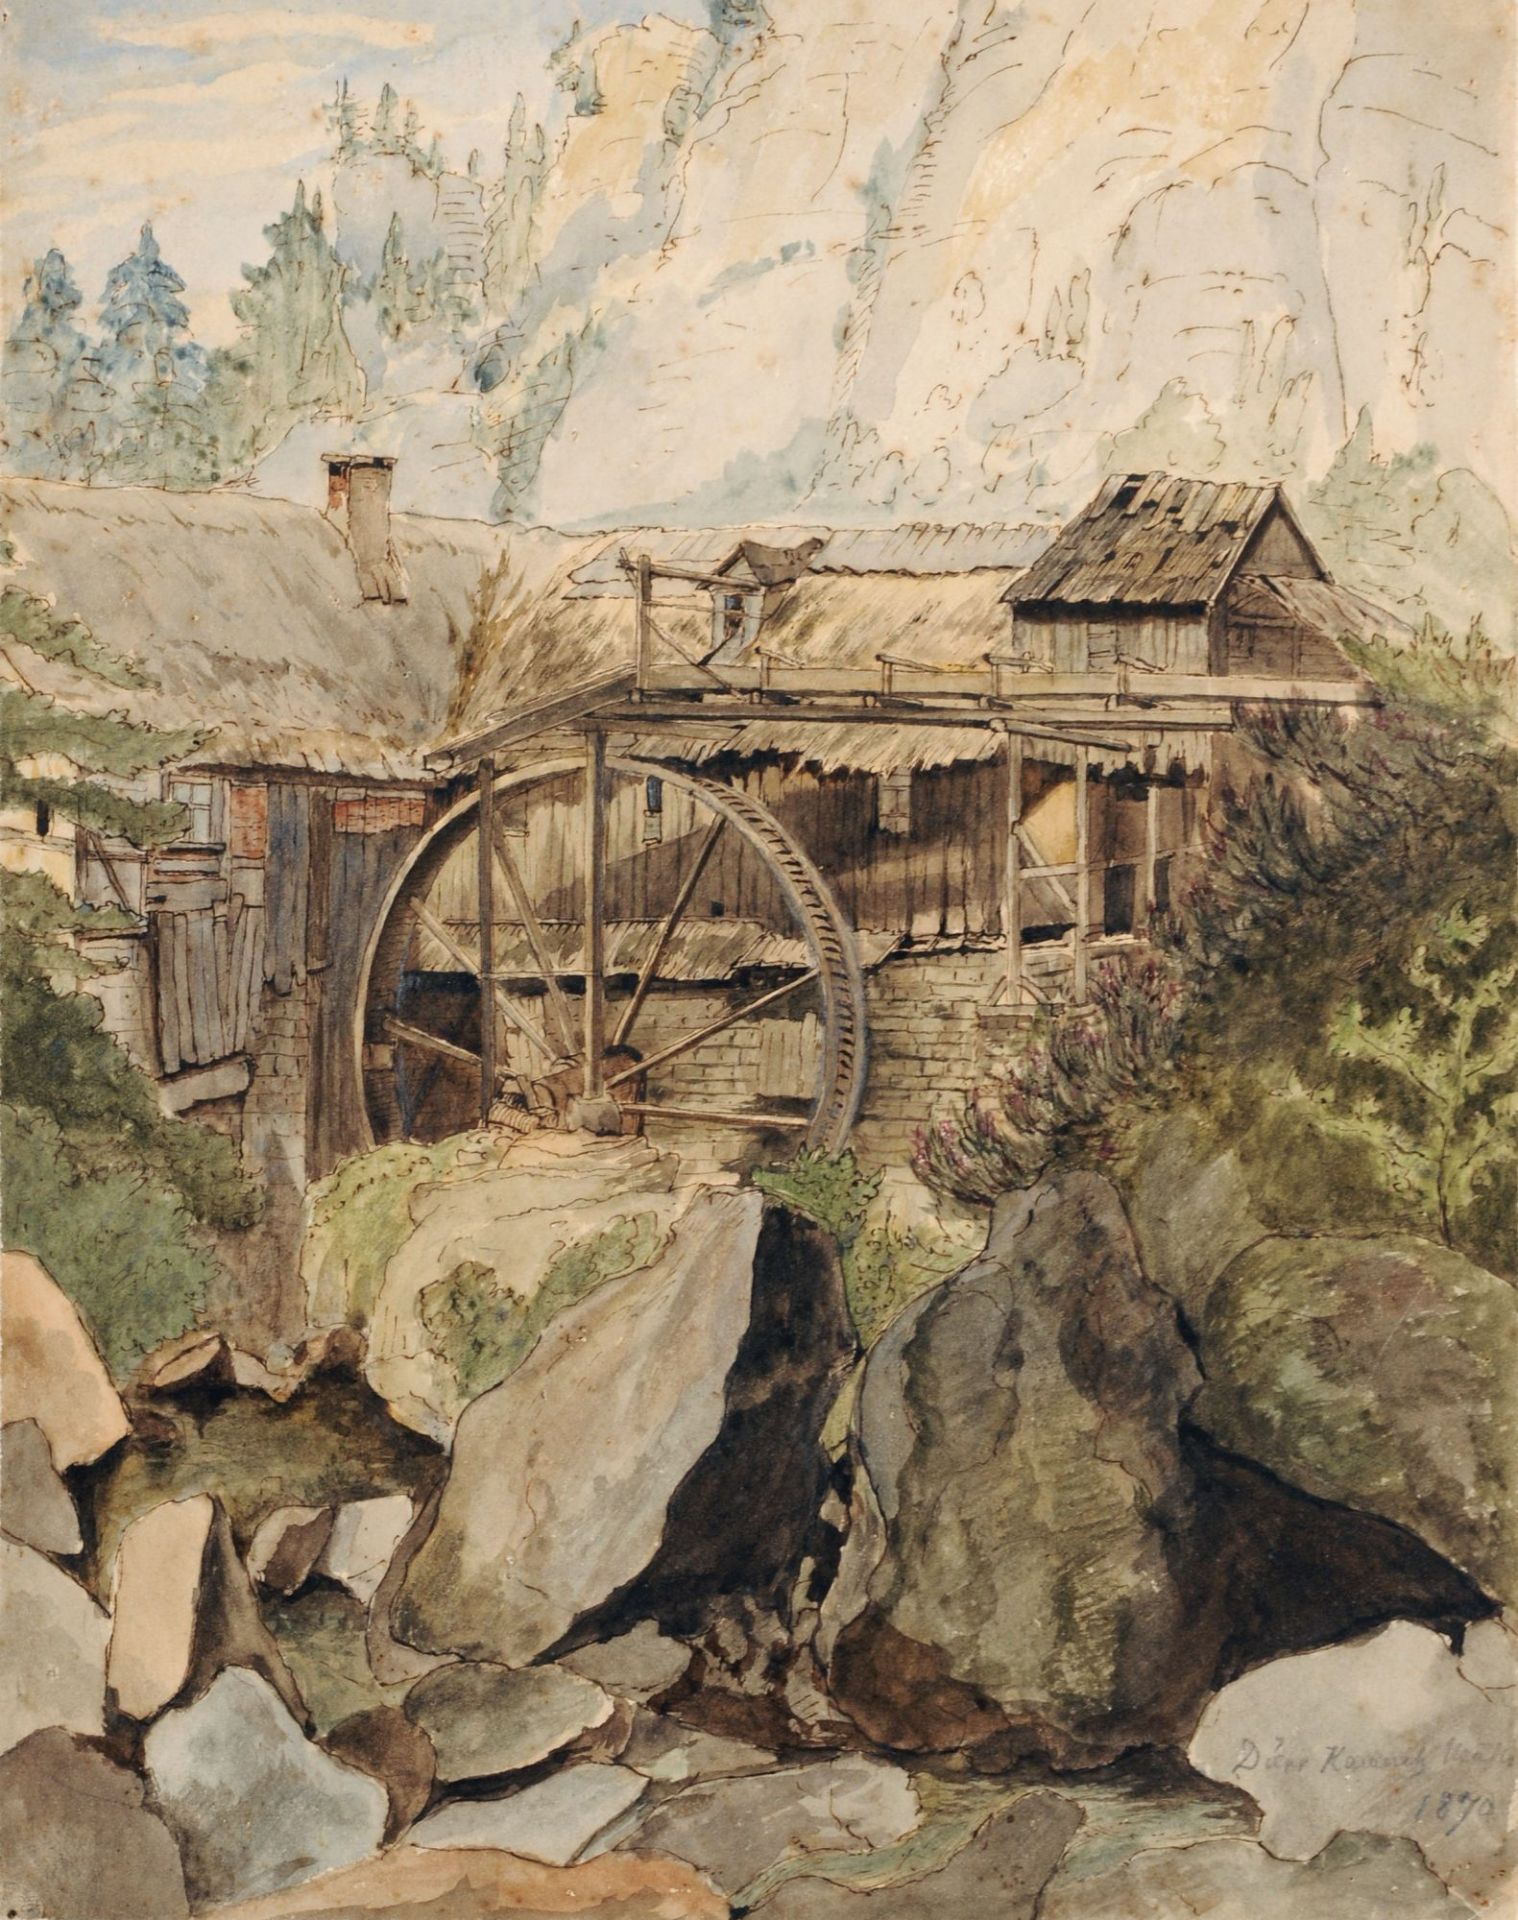 Heinrich Woldemar Rau (zugeschr.) "Dürr-Kamnitz-Mühle". 1870.